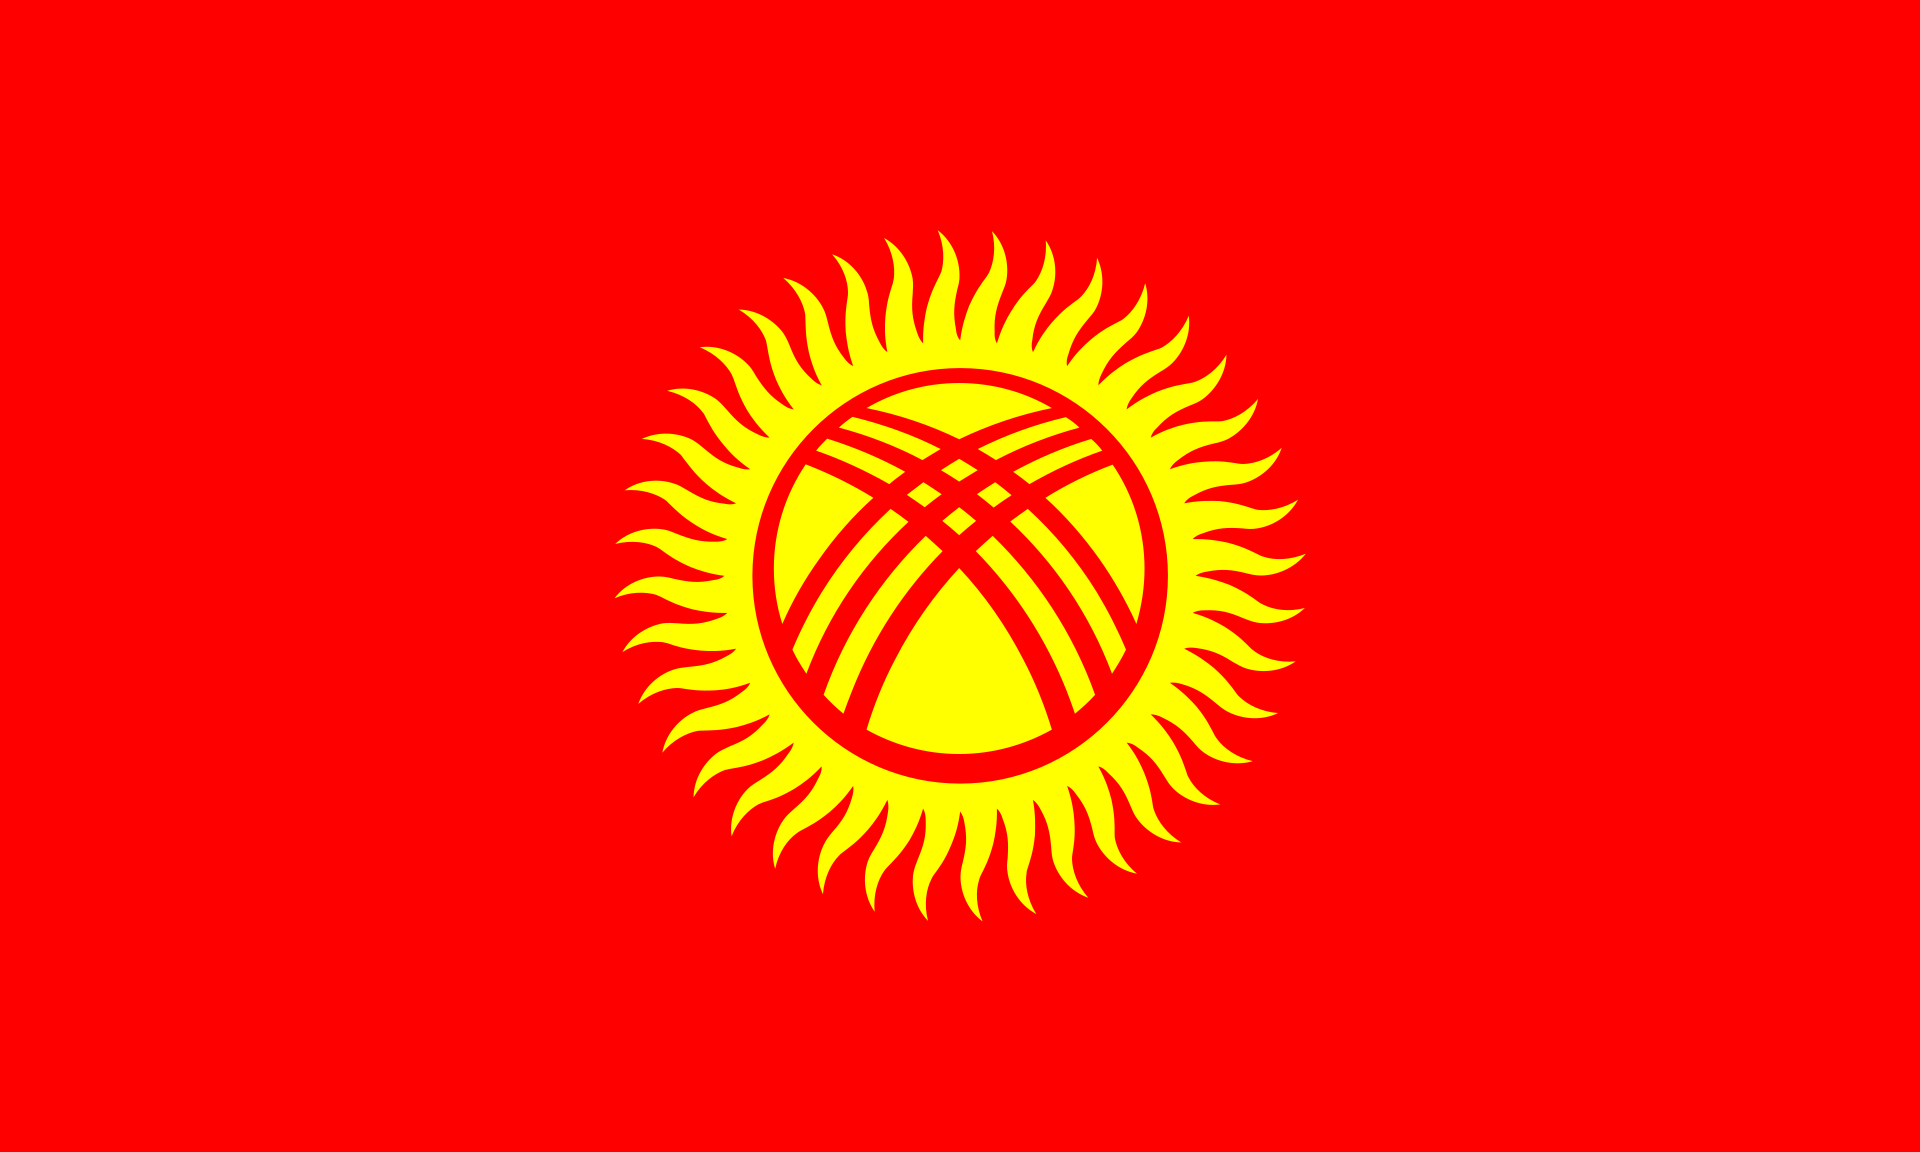 吉爾吉斯斯坦(吉爾吉斯斯坦共和國)